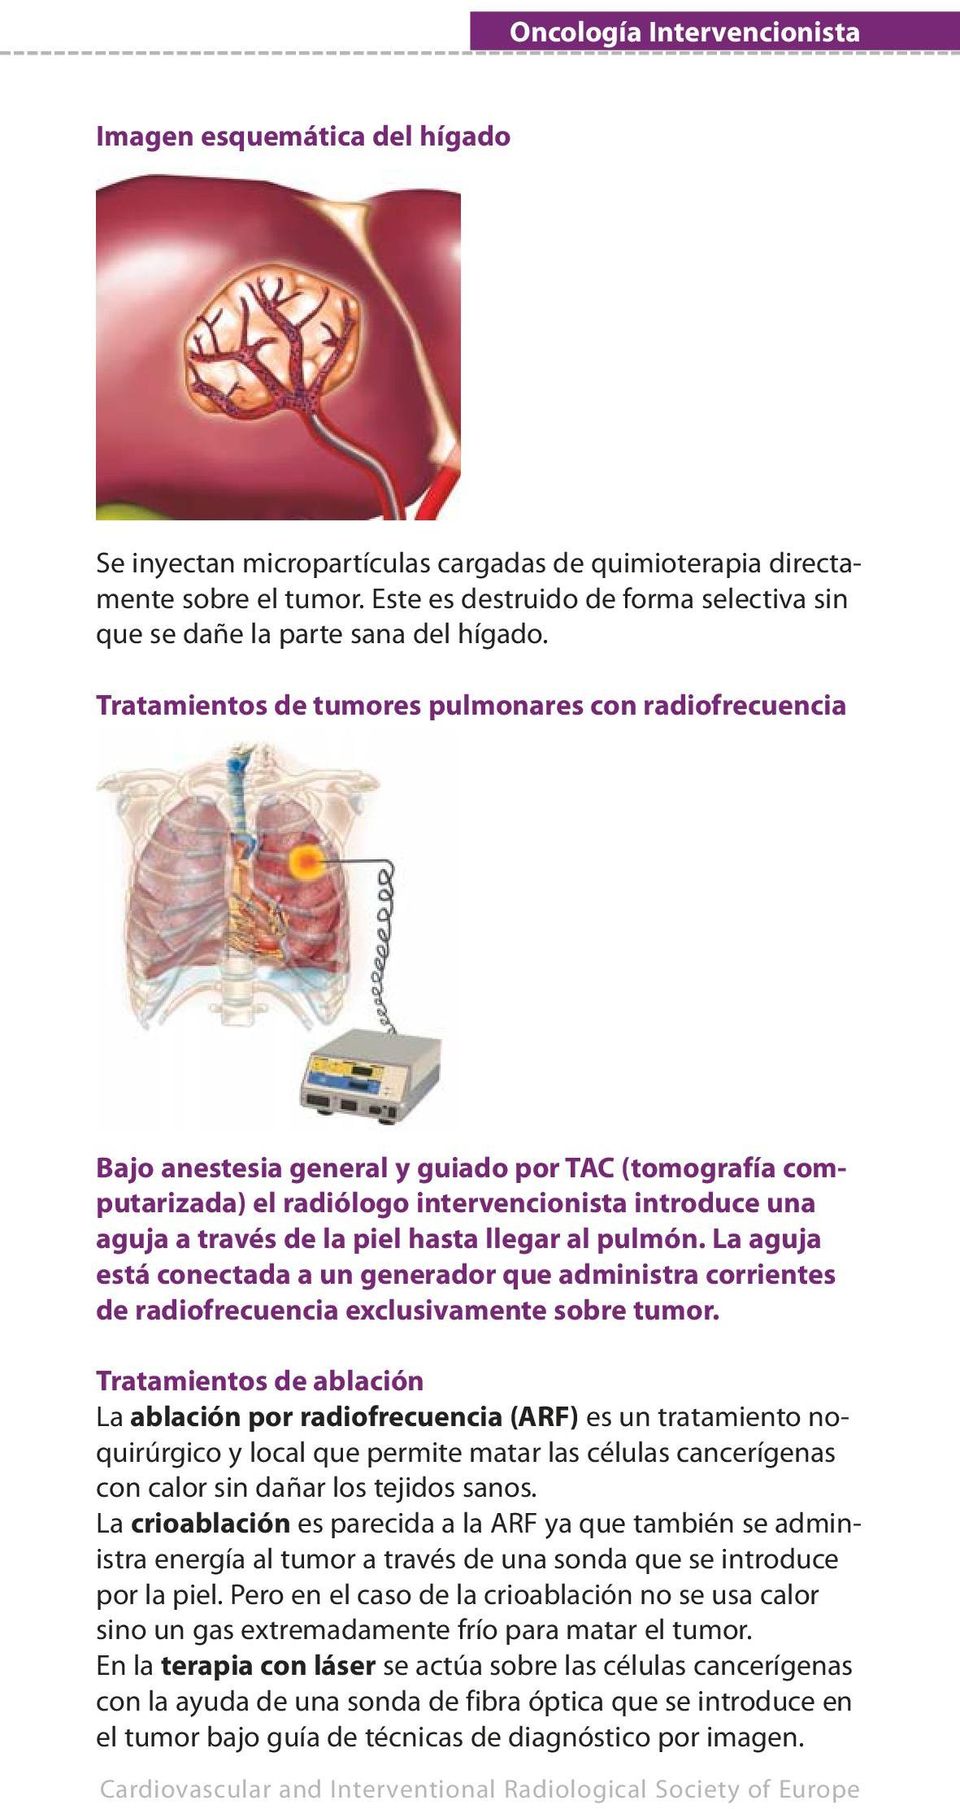 Tratamientos de tumores pulmonares con radiofrecuencia Bajo anestesia general y guiado por TAC (tomografía computarizada) el radiólogo intervencionista introduce una aguja a través de la piel hasta